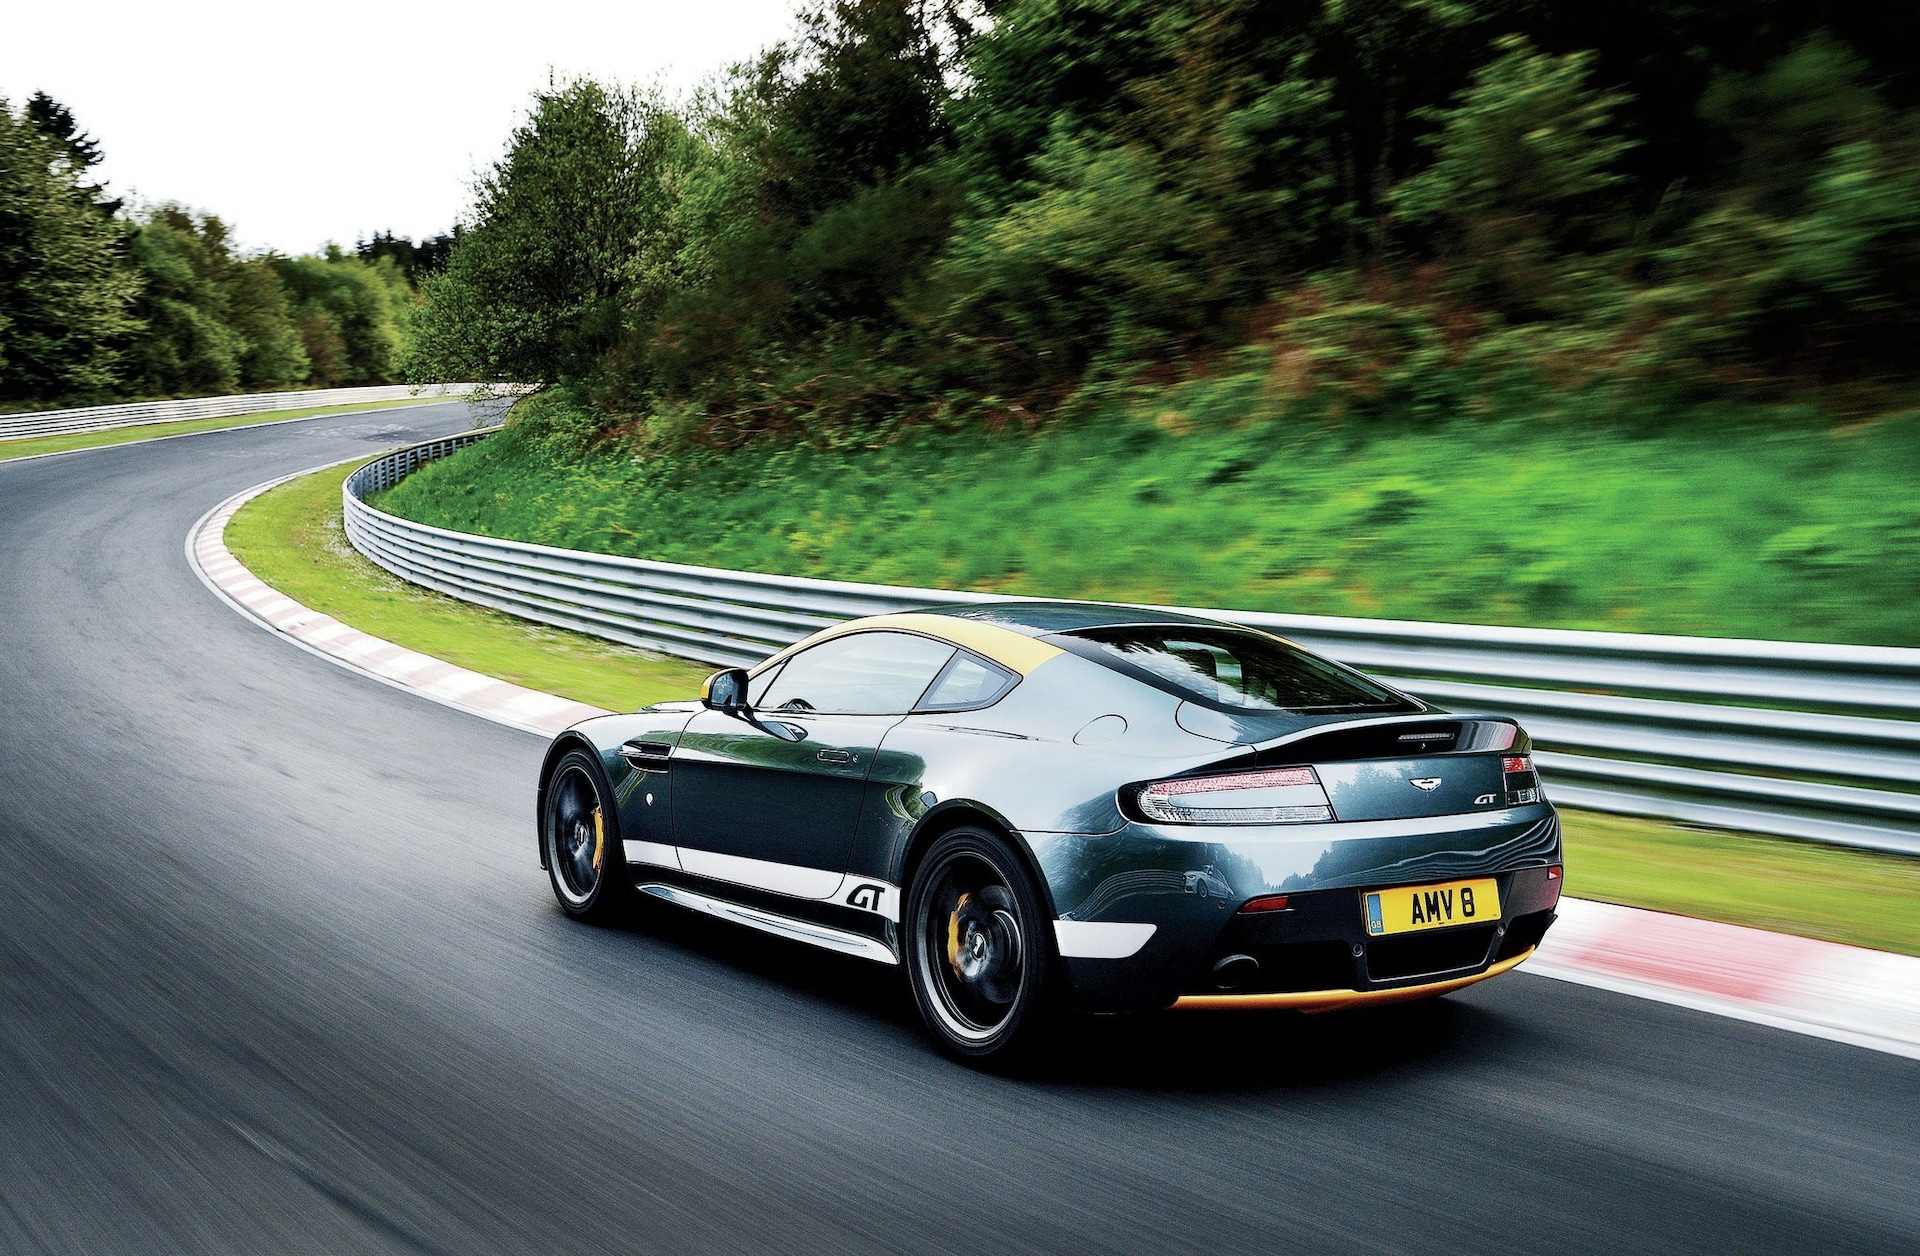 2014 Aston Martin V8 Vantage GT - $100,000 Performer Tested at Nürburgring